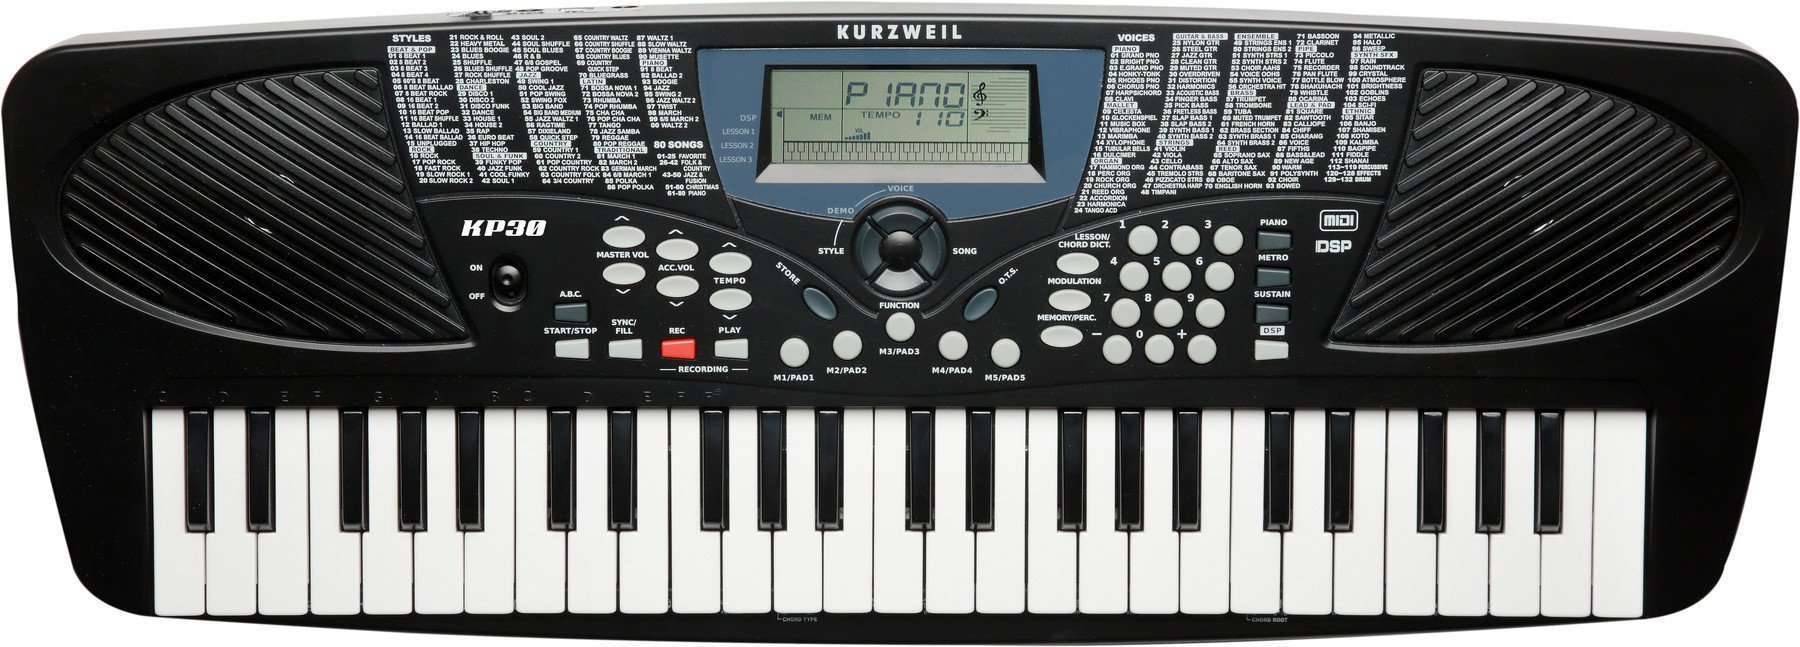 Keyboards ohne Touch Response Kurzweil KP30